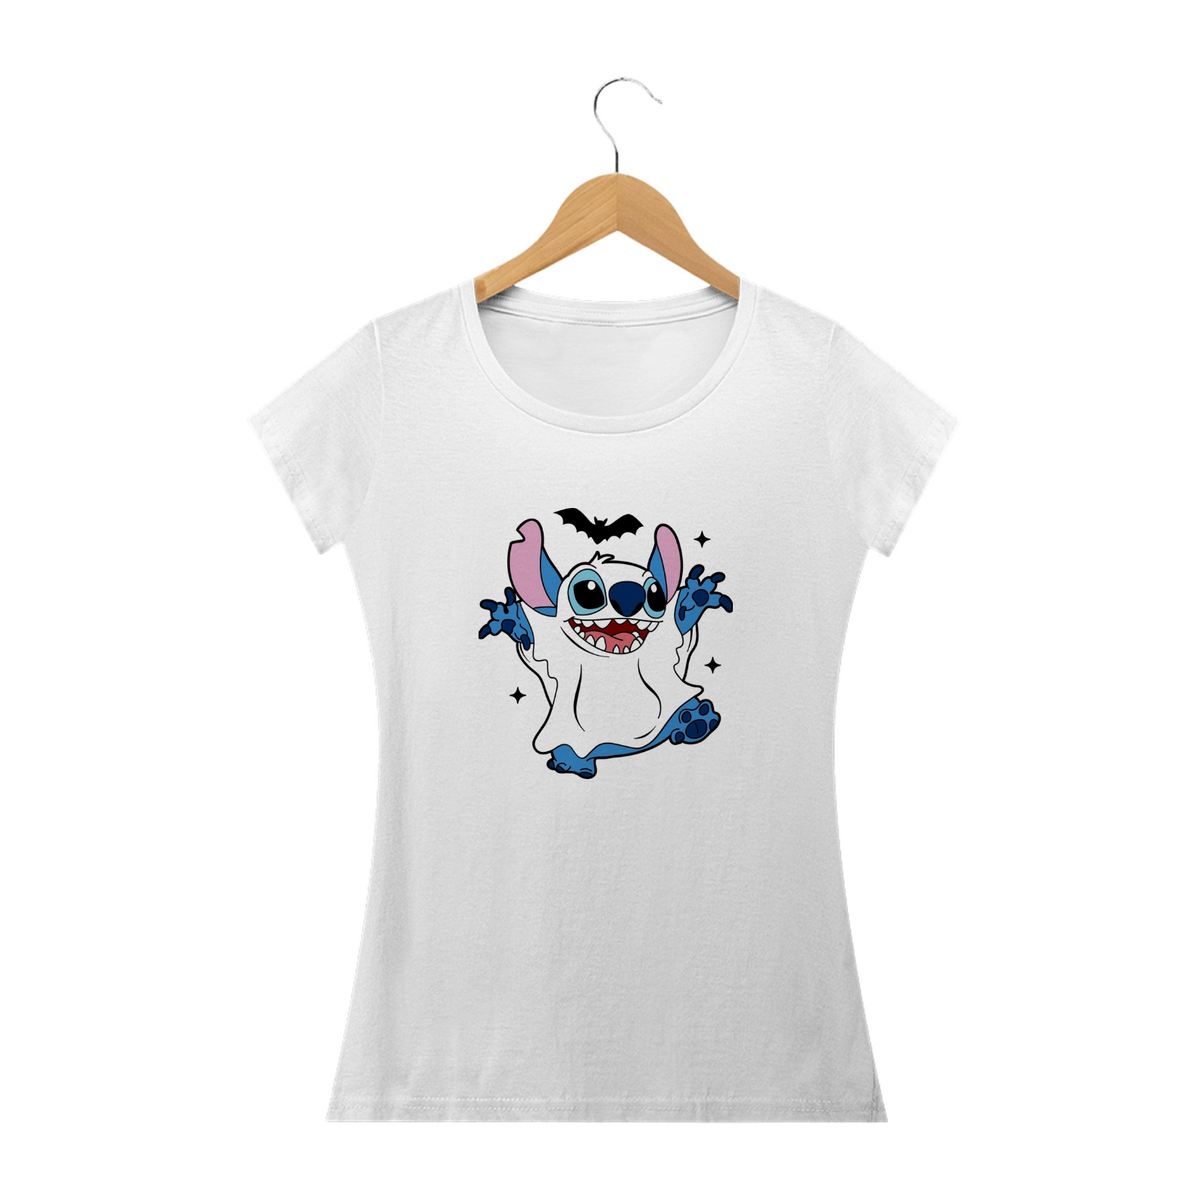 Nome do produto: Camiseta Classica Stitch - Fantasma